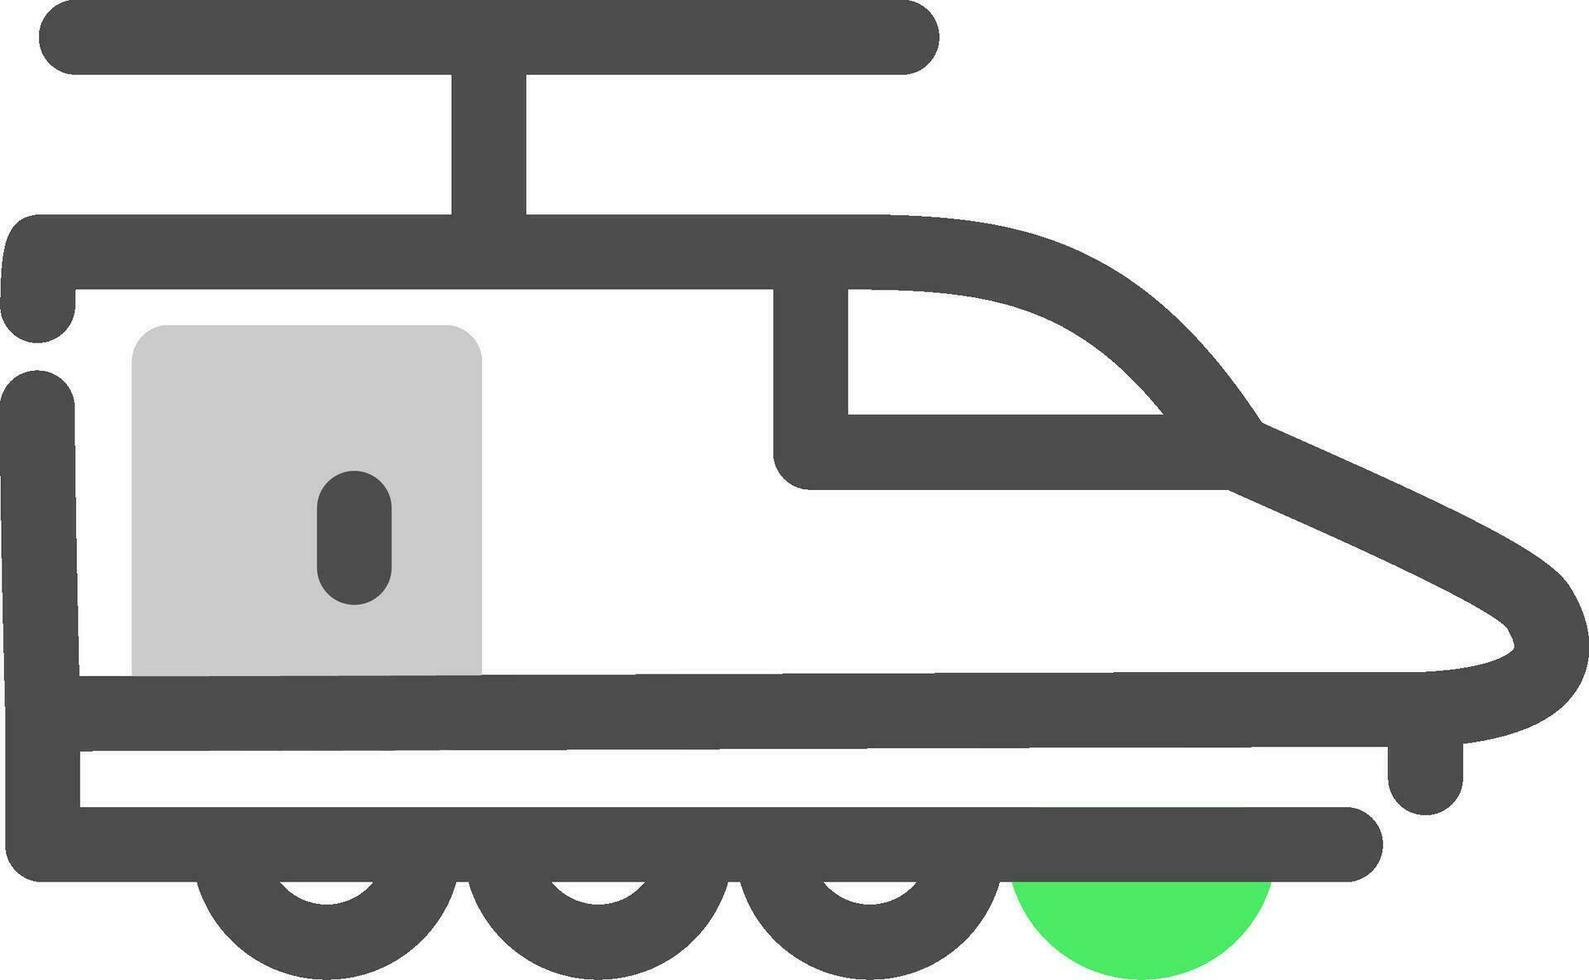 Electric Train Creative Icon Design vector